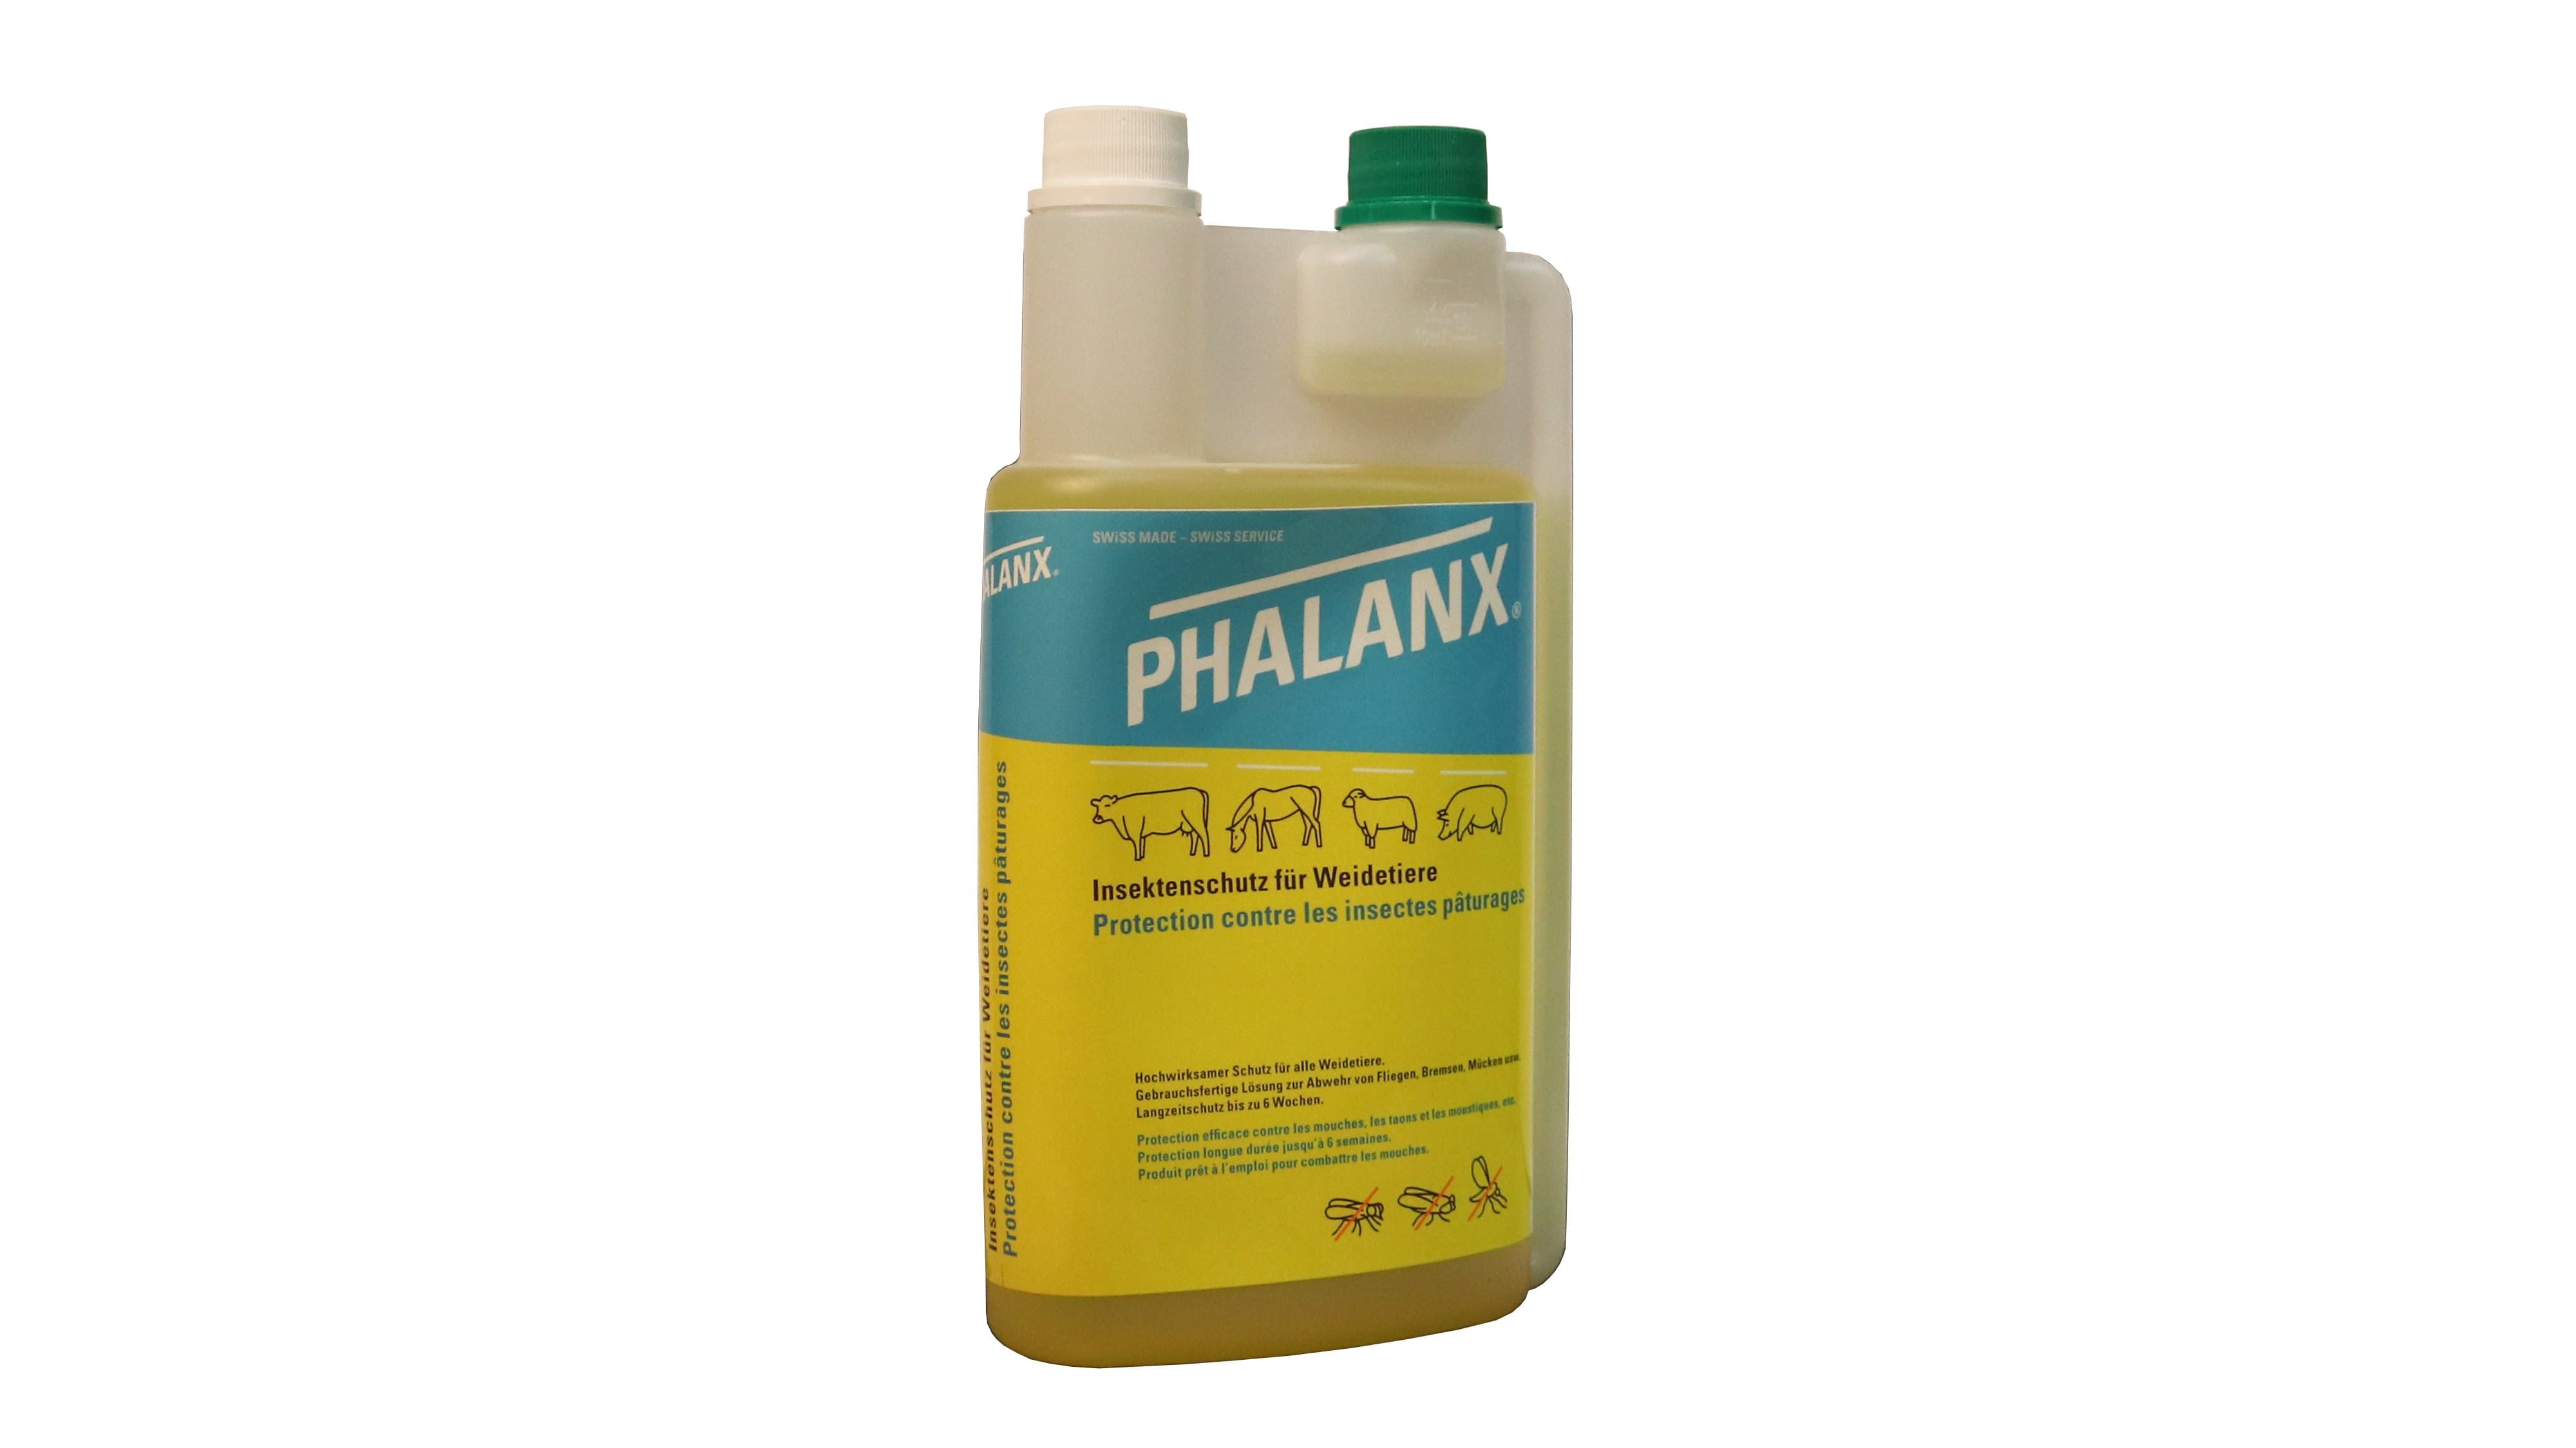 PHALANX Bio Insektenschutz Weidetiere